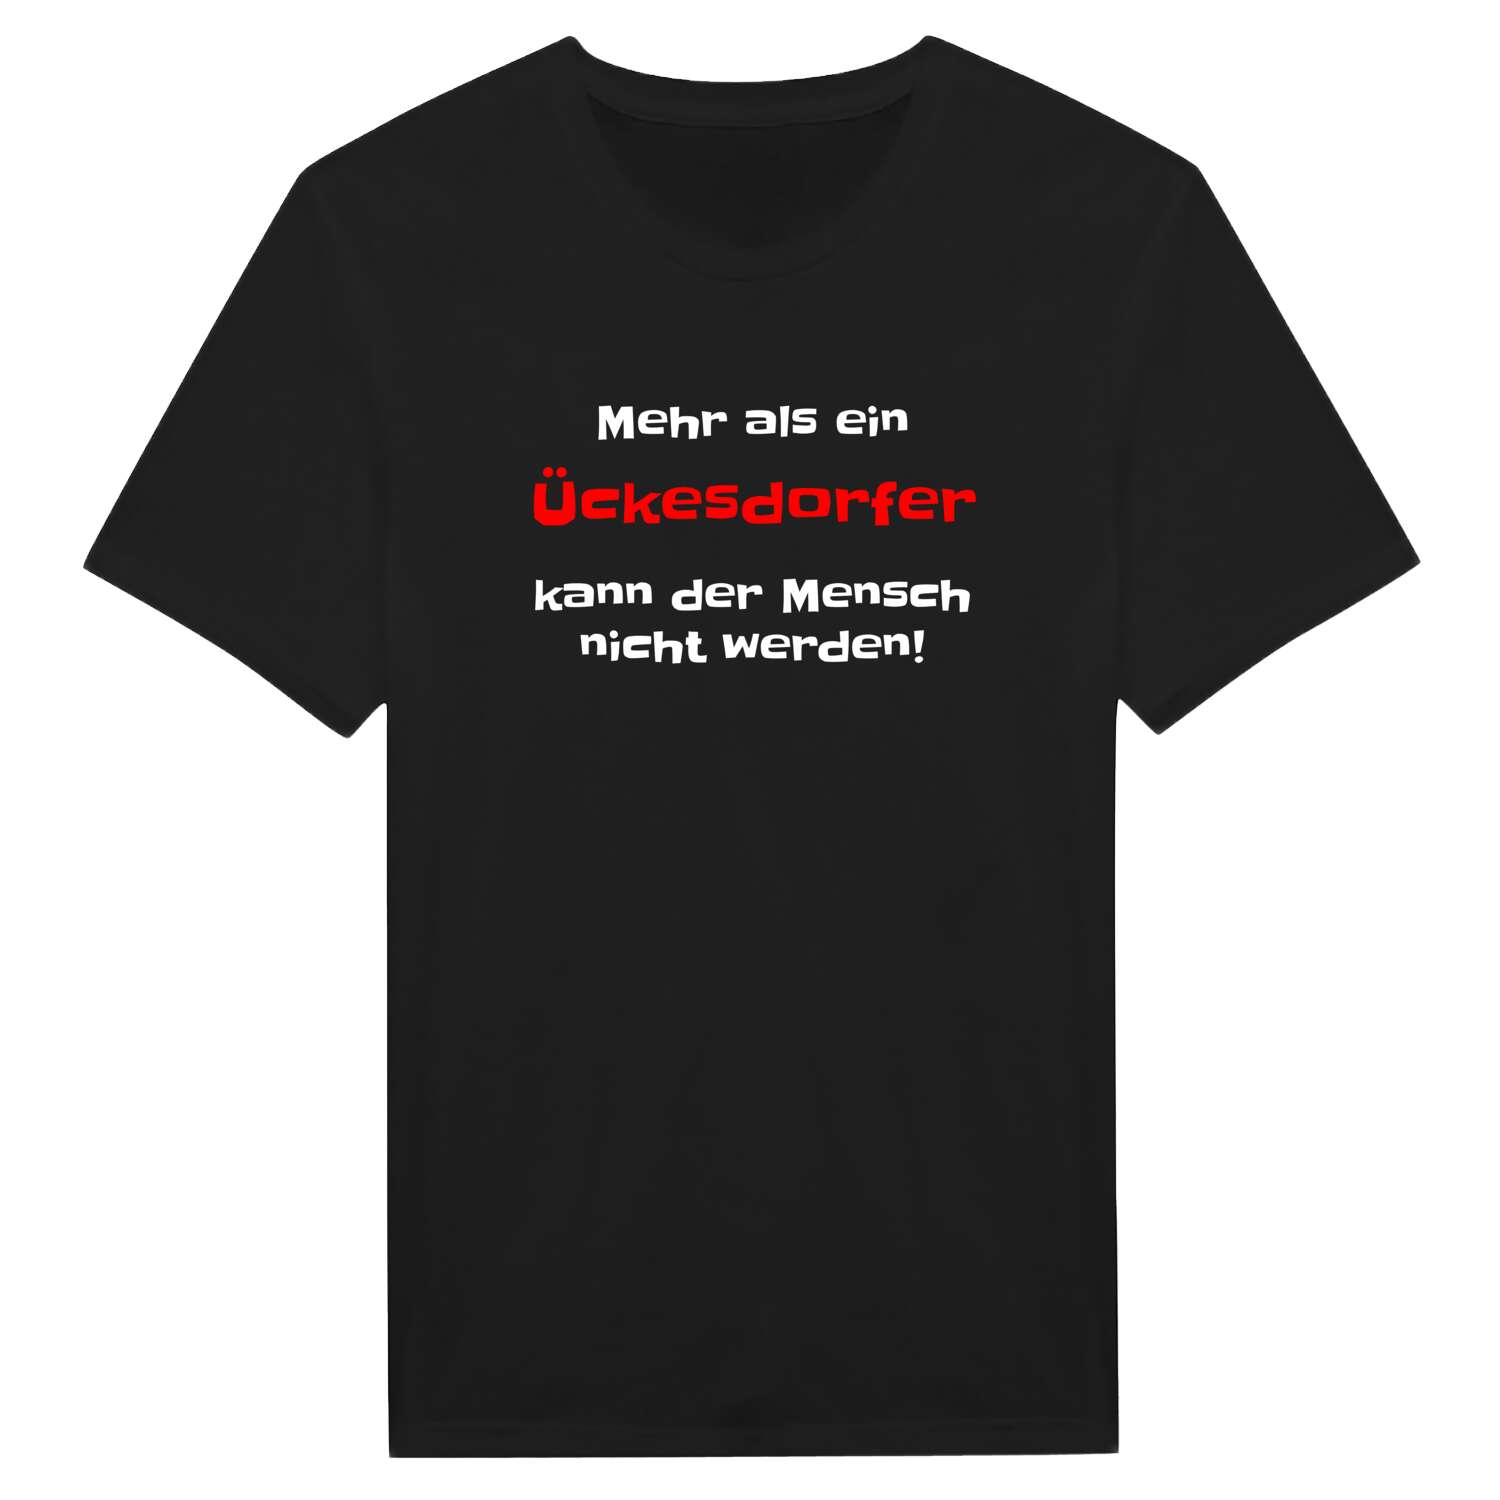 Ückesdorf T-Shirt »Mehr als ein«